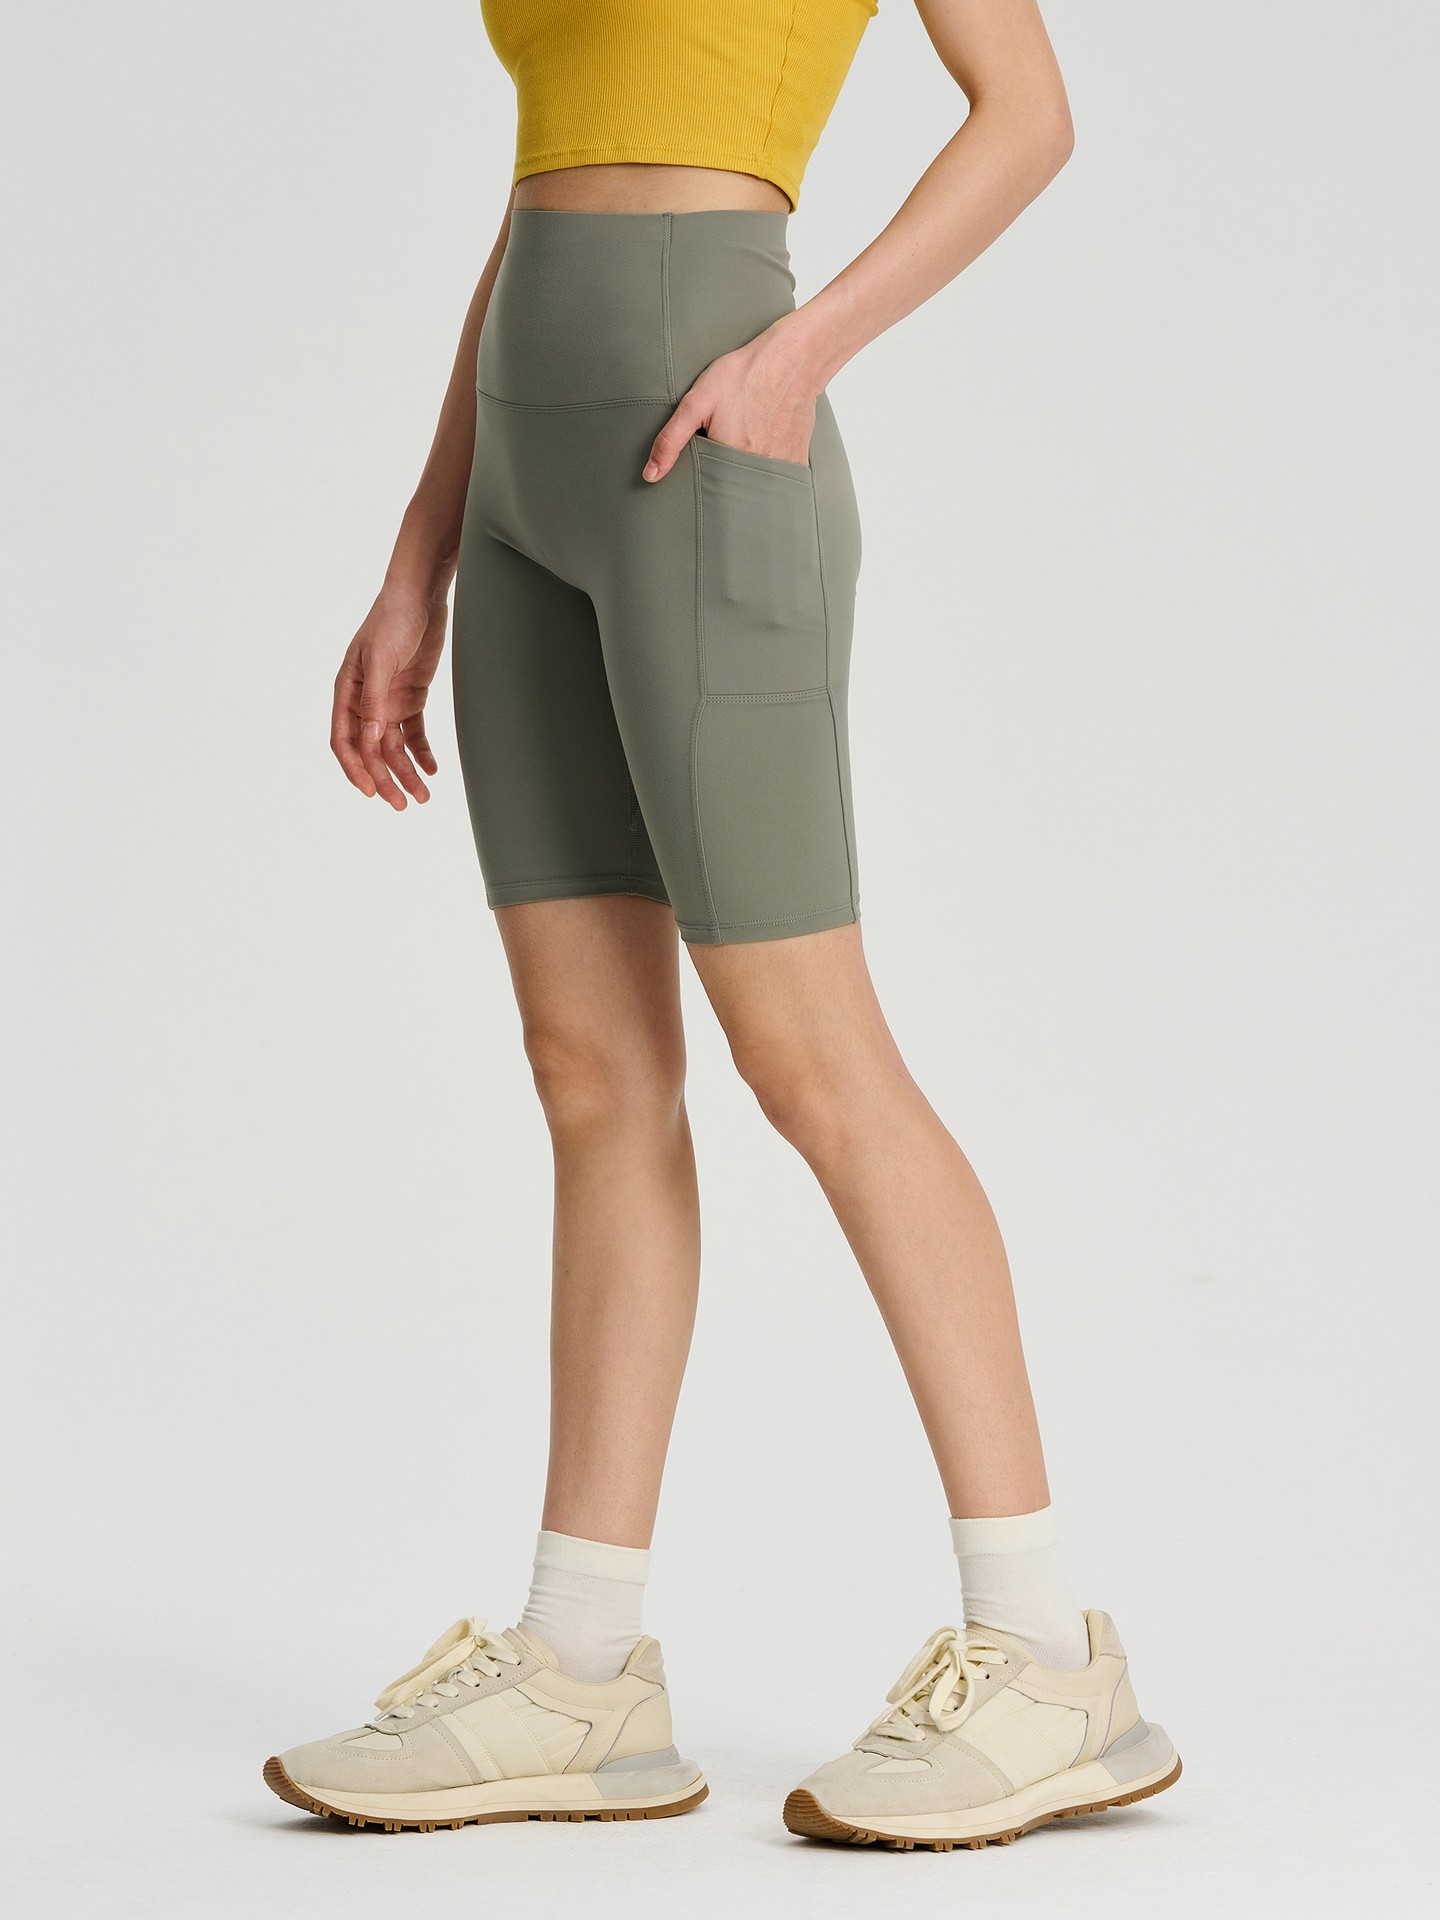 Shorts de ginástica curto cintura alto de nylon, Urbanic